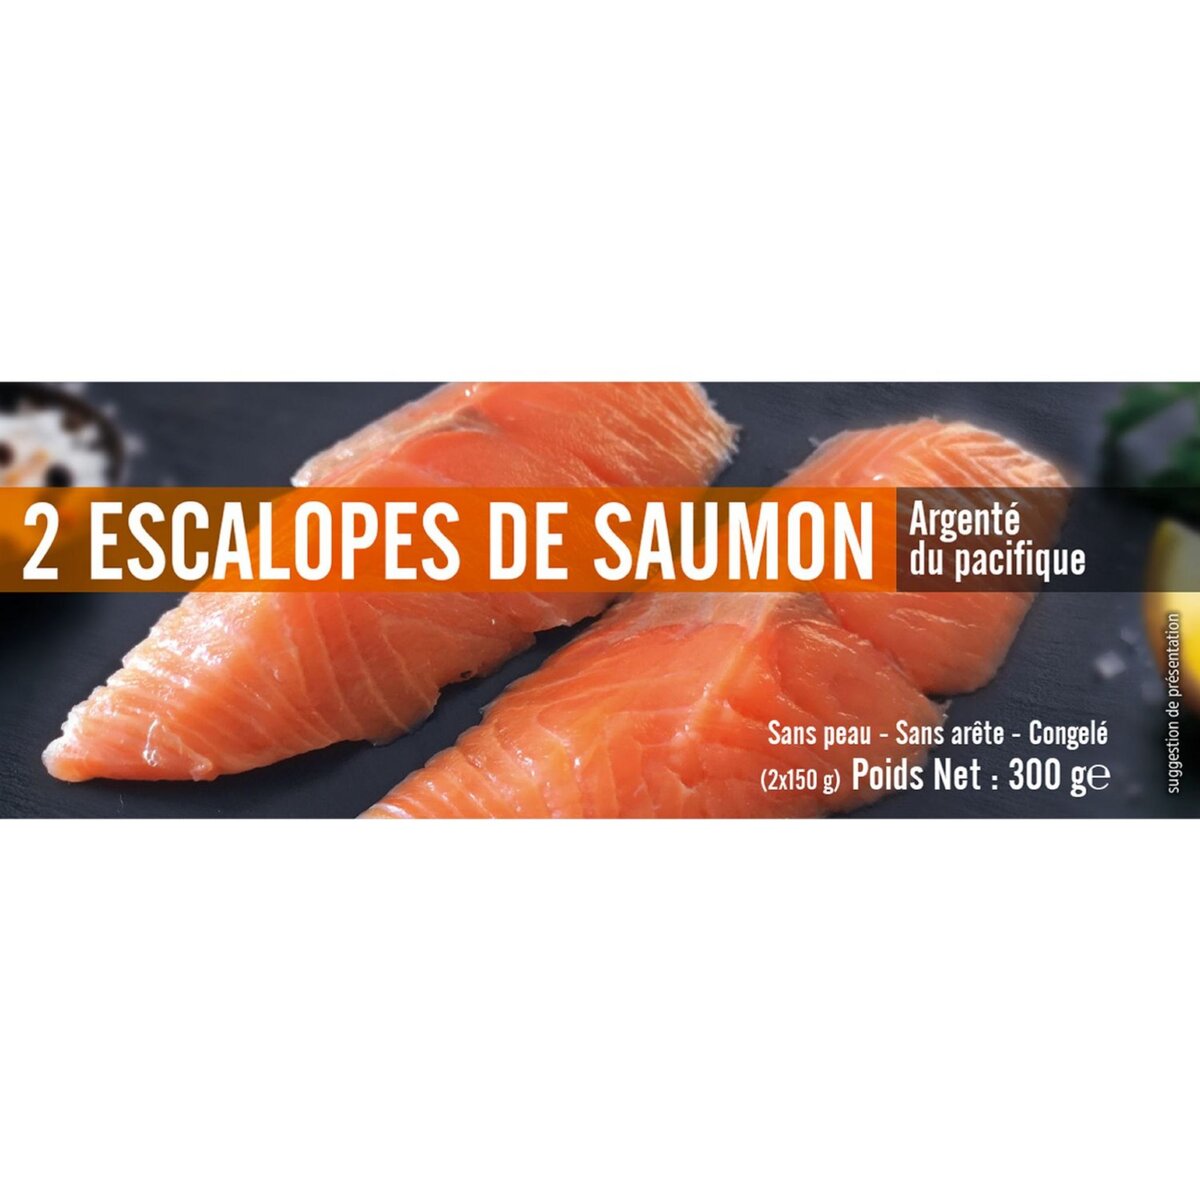 Escalopes de saumon argenté du Pacifique 300g 2x150g